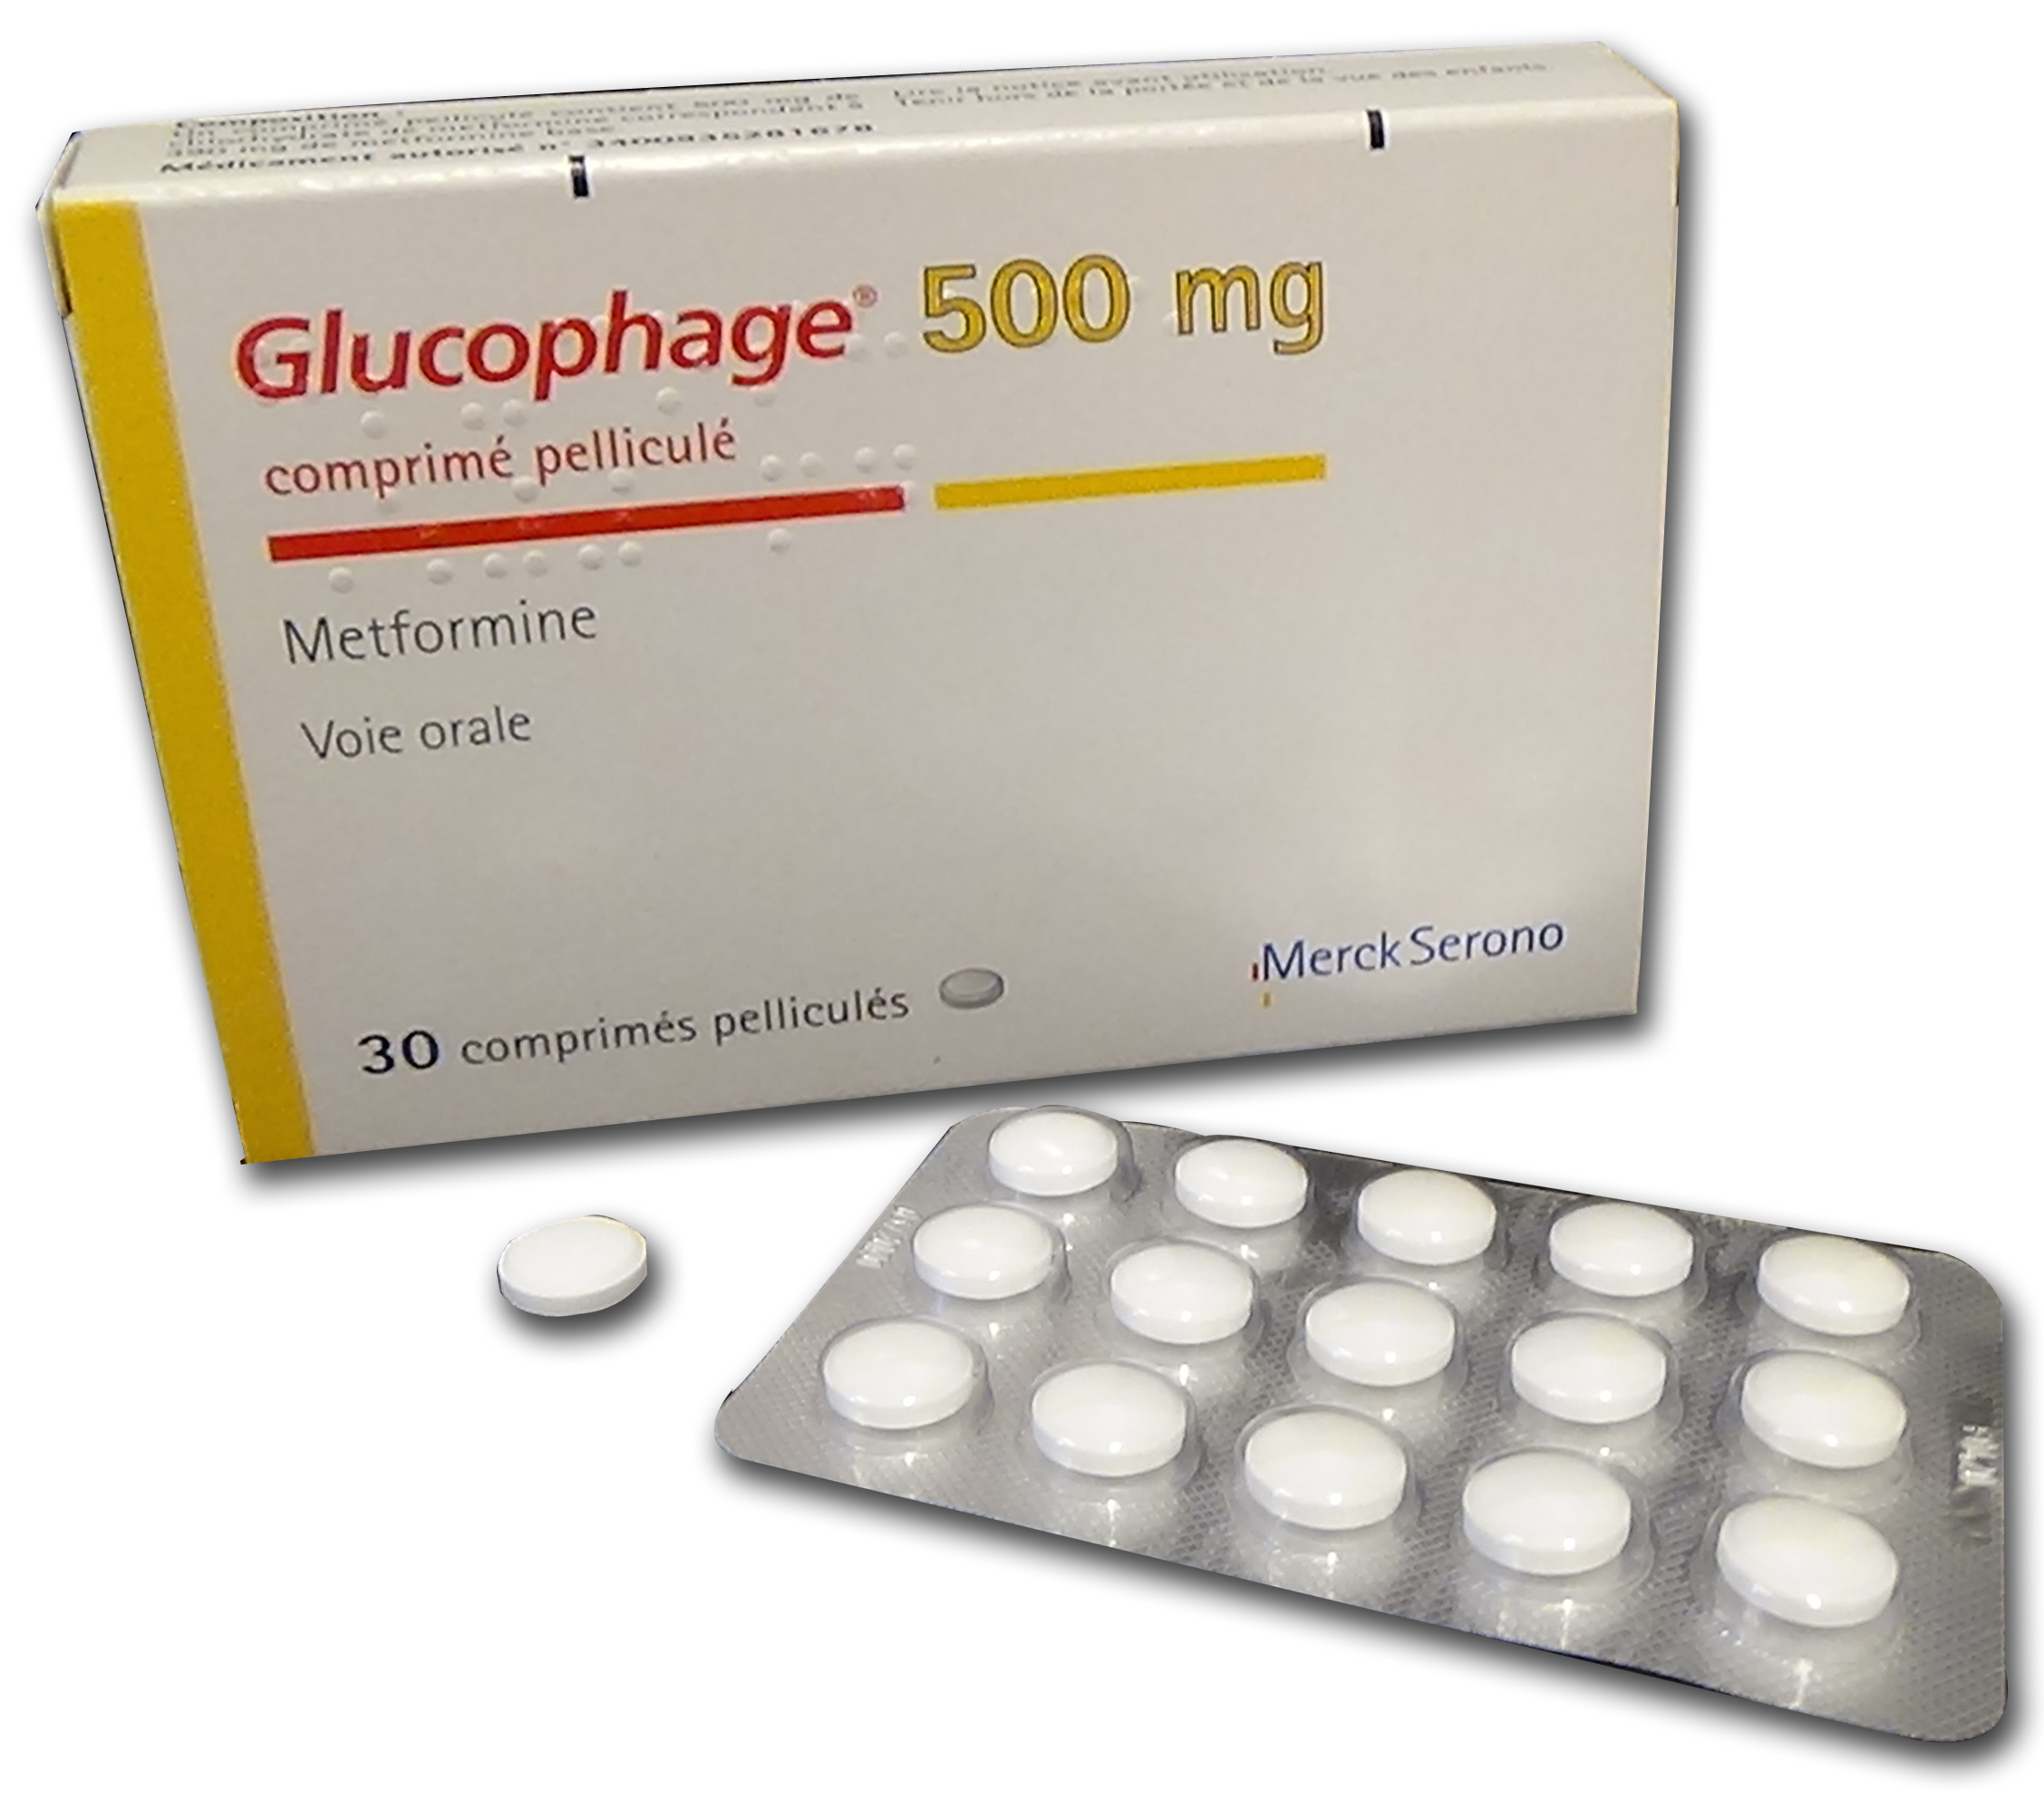 Visuel de l'emballage du médicament GLUCOPHAGE 500 mg, comprimé pelliculé.